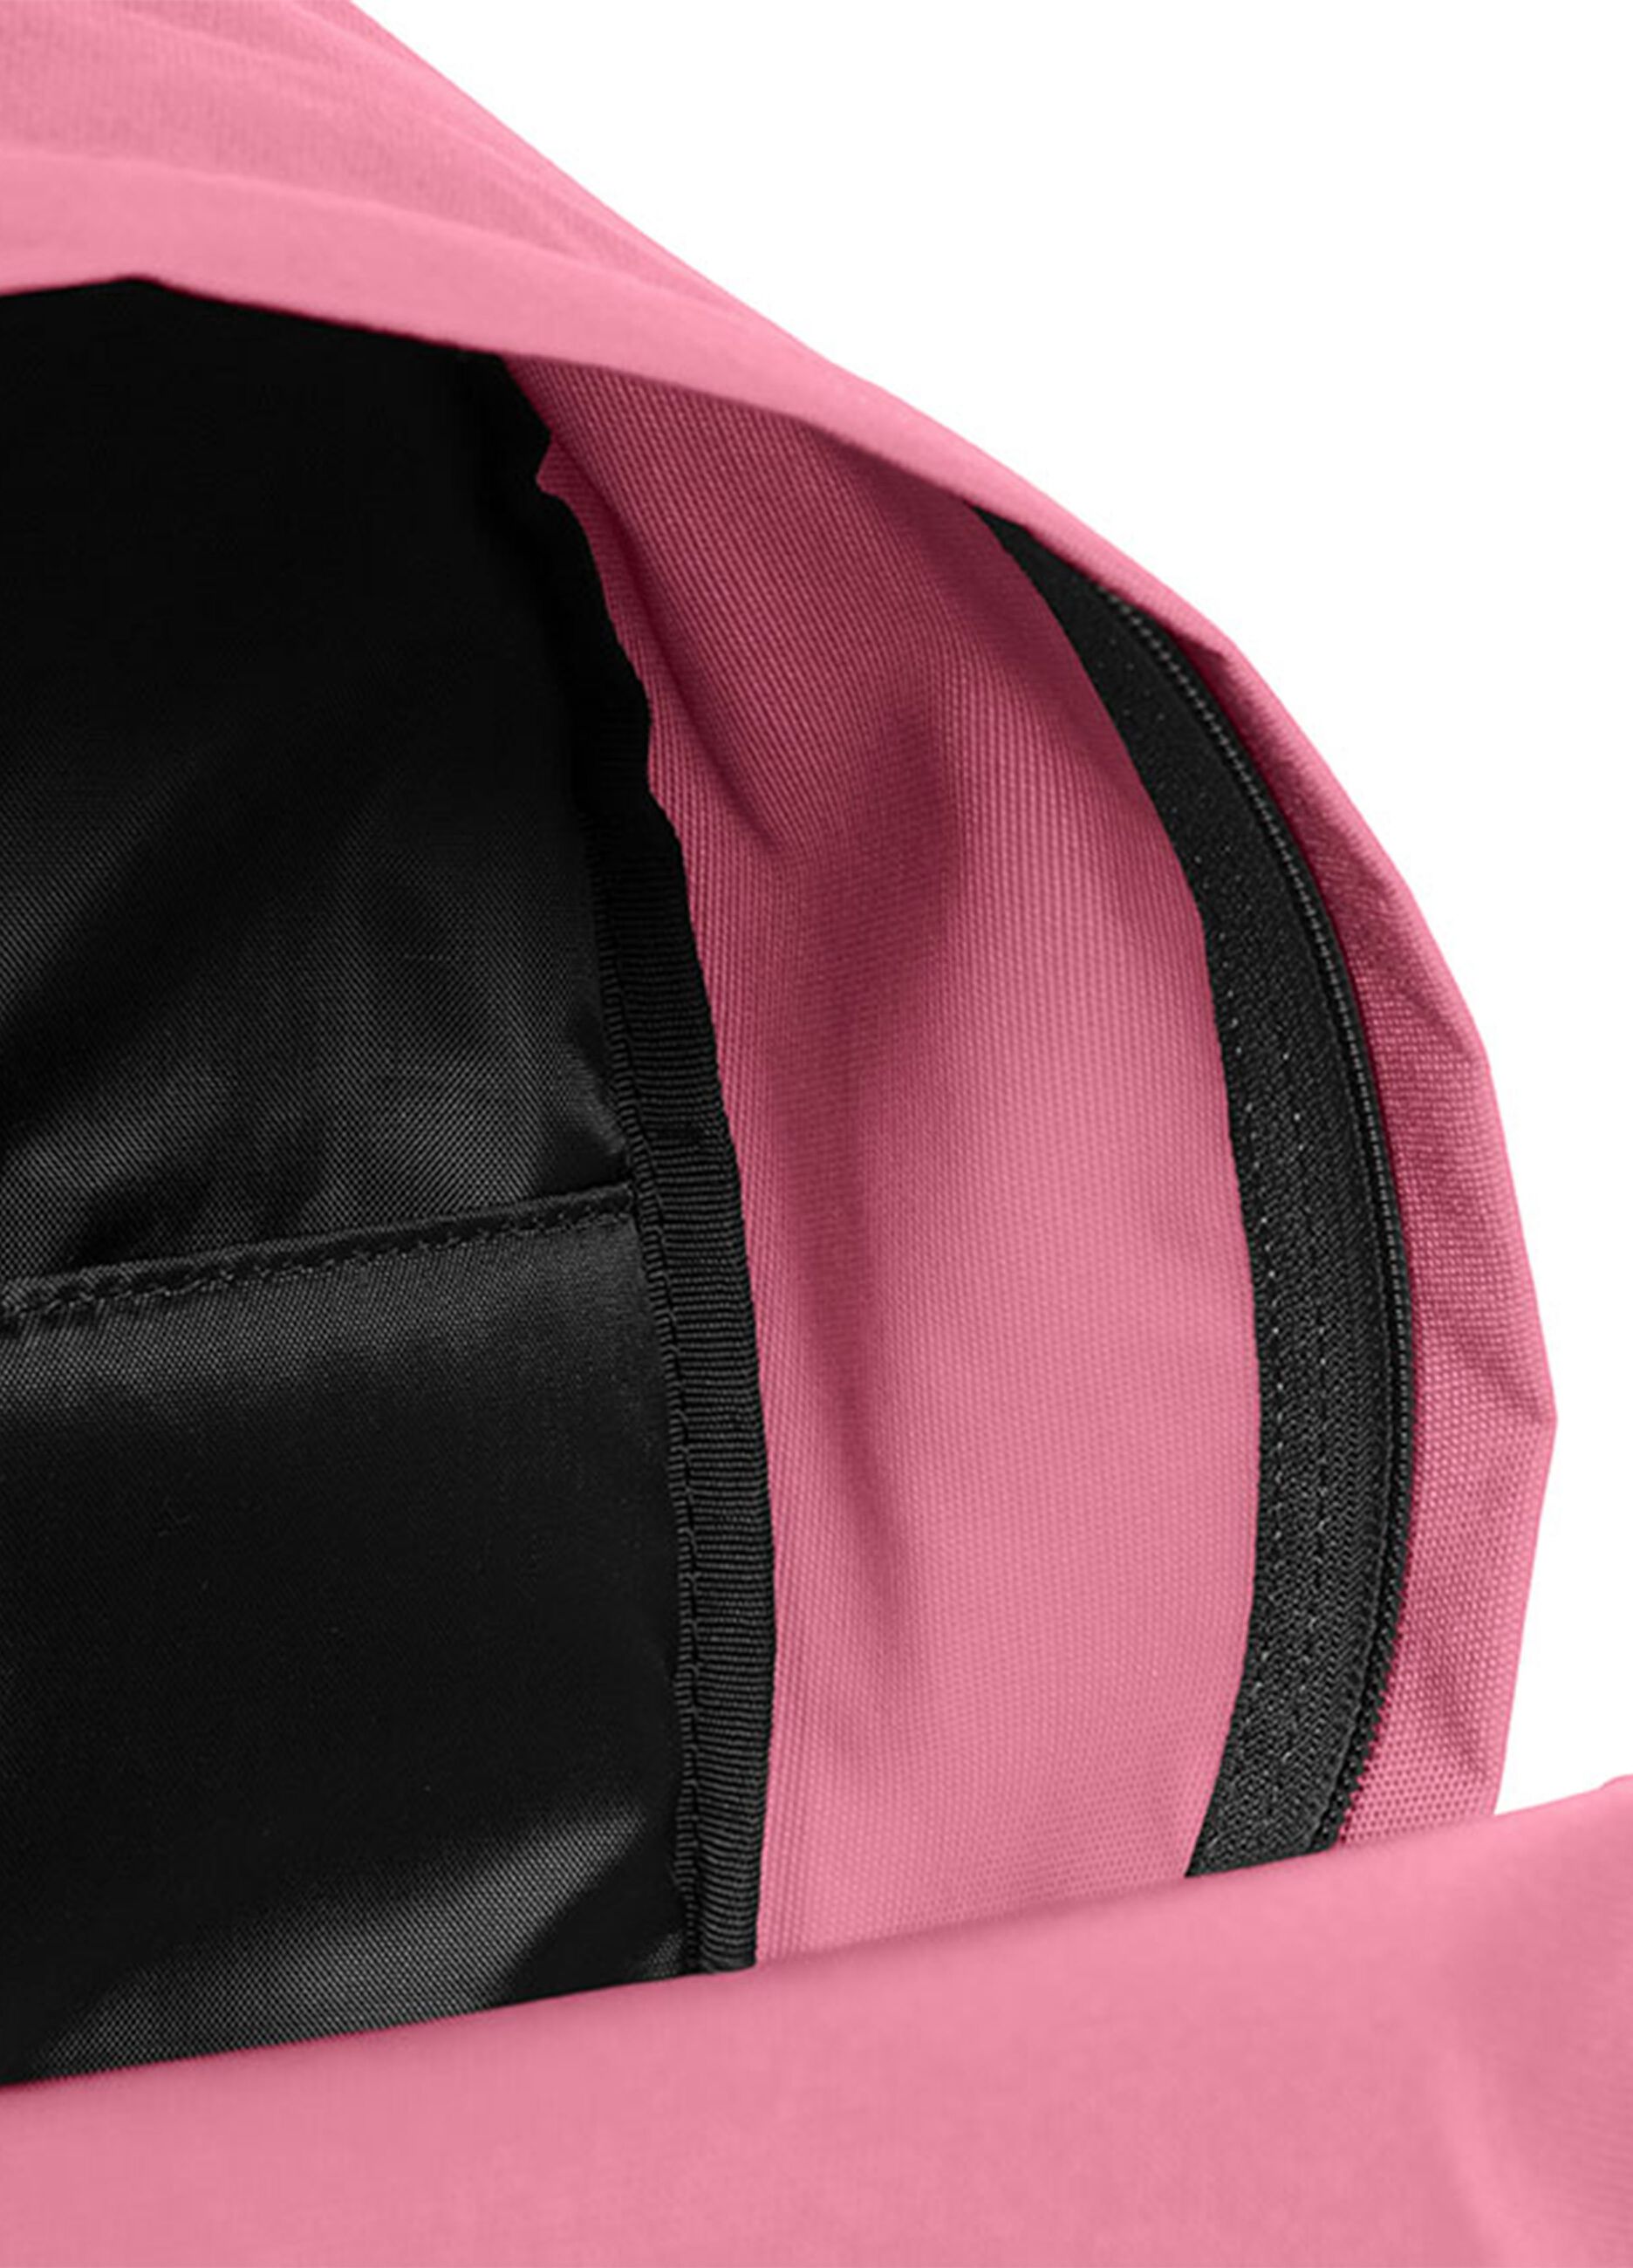 Eastpak Padded Zippl'R backpack